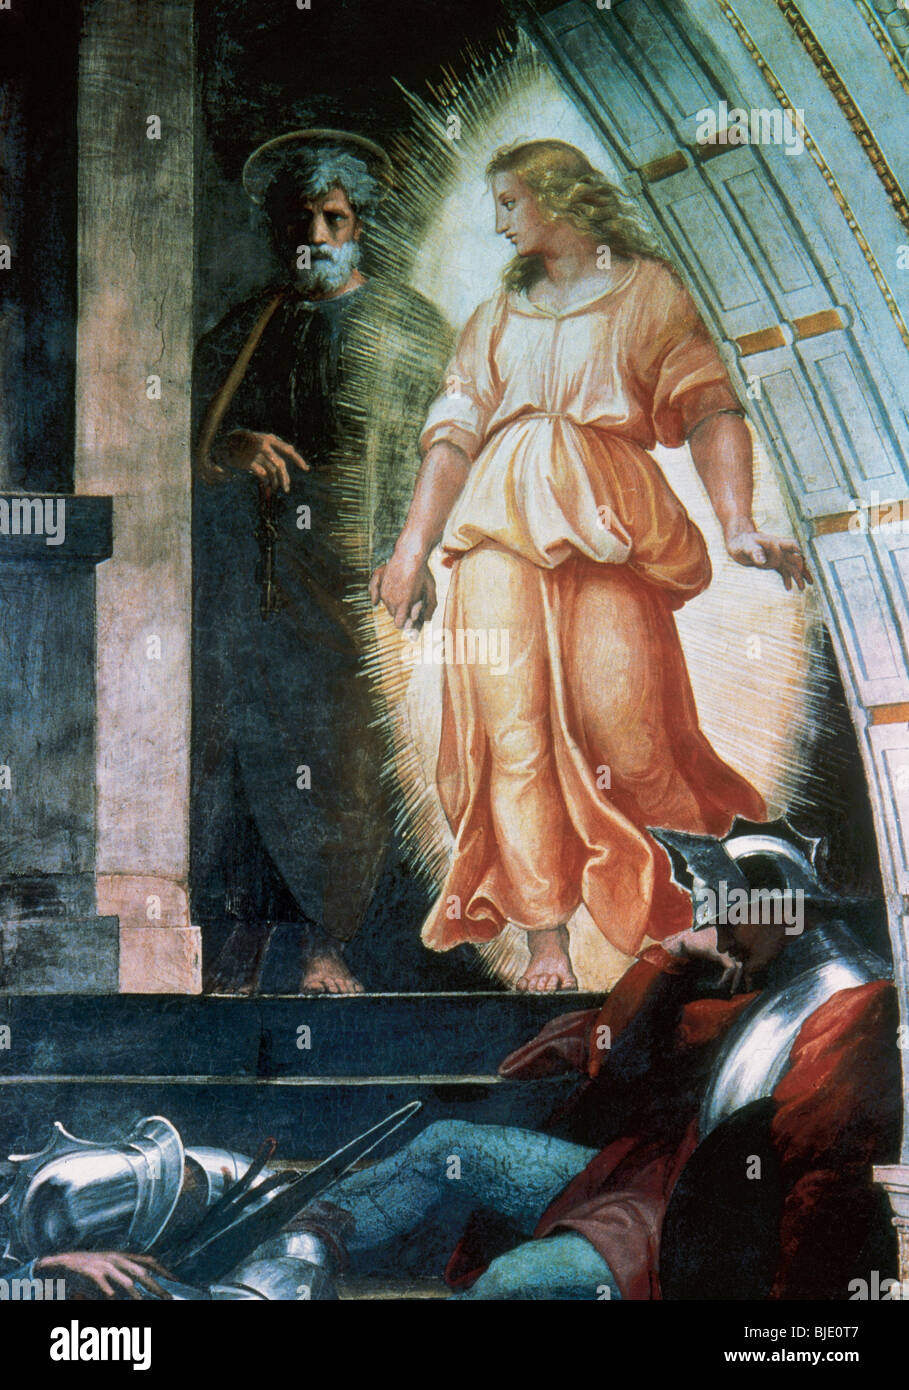 Raphael, Raffaello Santi oder Sanzio, genannt (Urbino, 1483-Rom, 1520). Italienischer Maler. Befreiung des Heiligen Petrus. Detail. Vatikan. Stockfoto